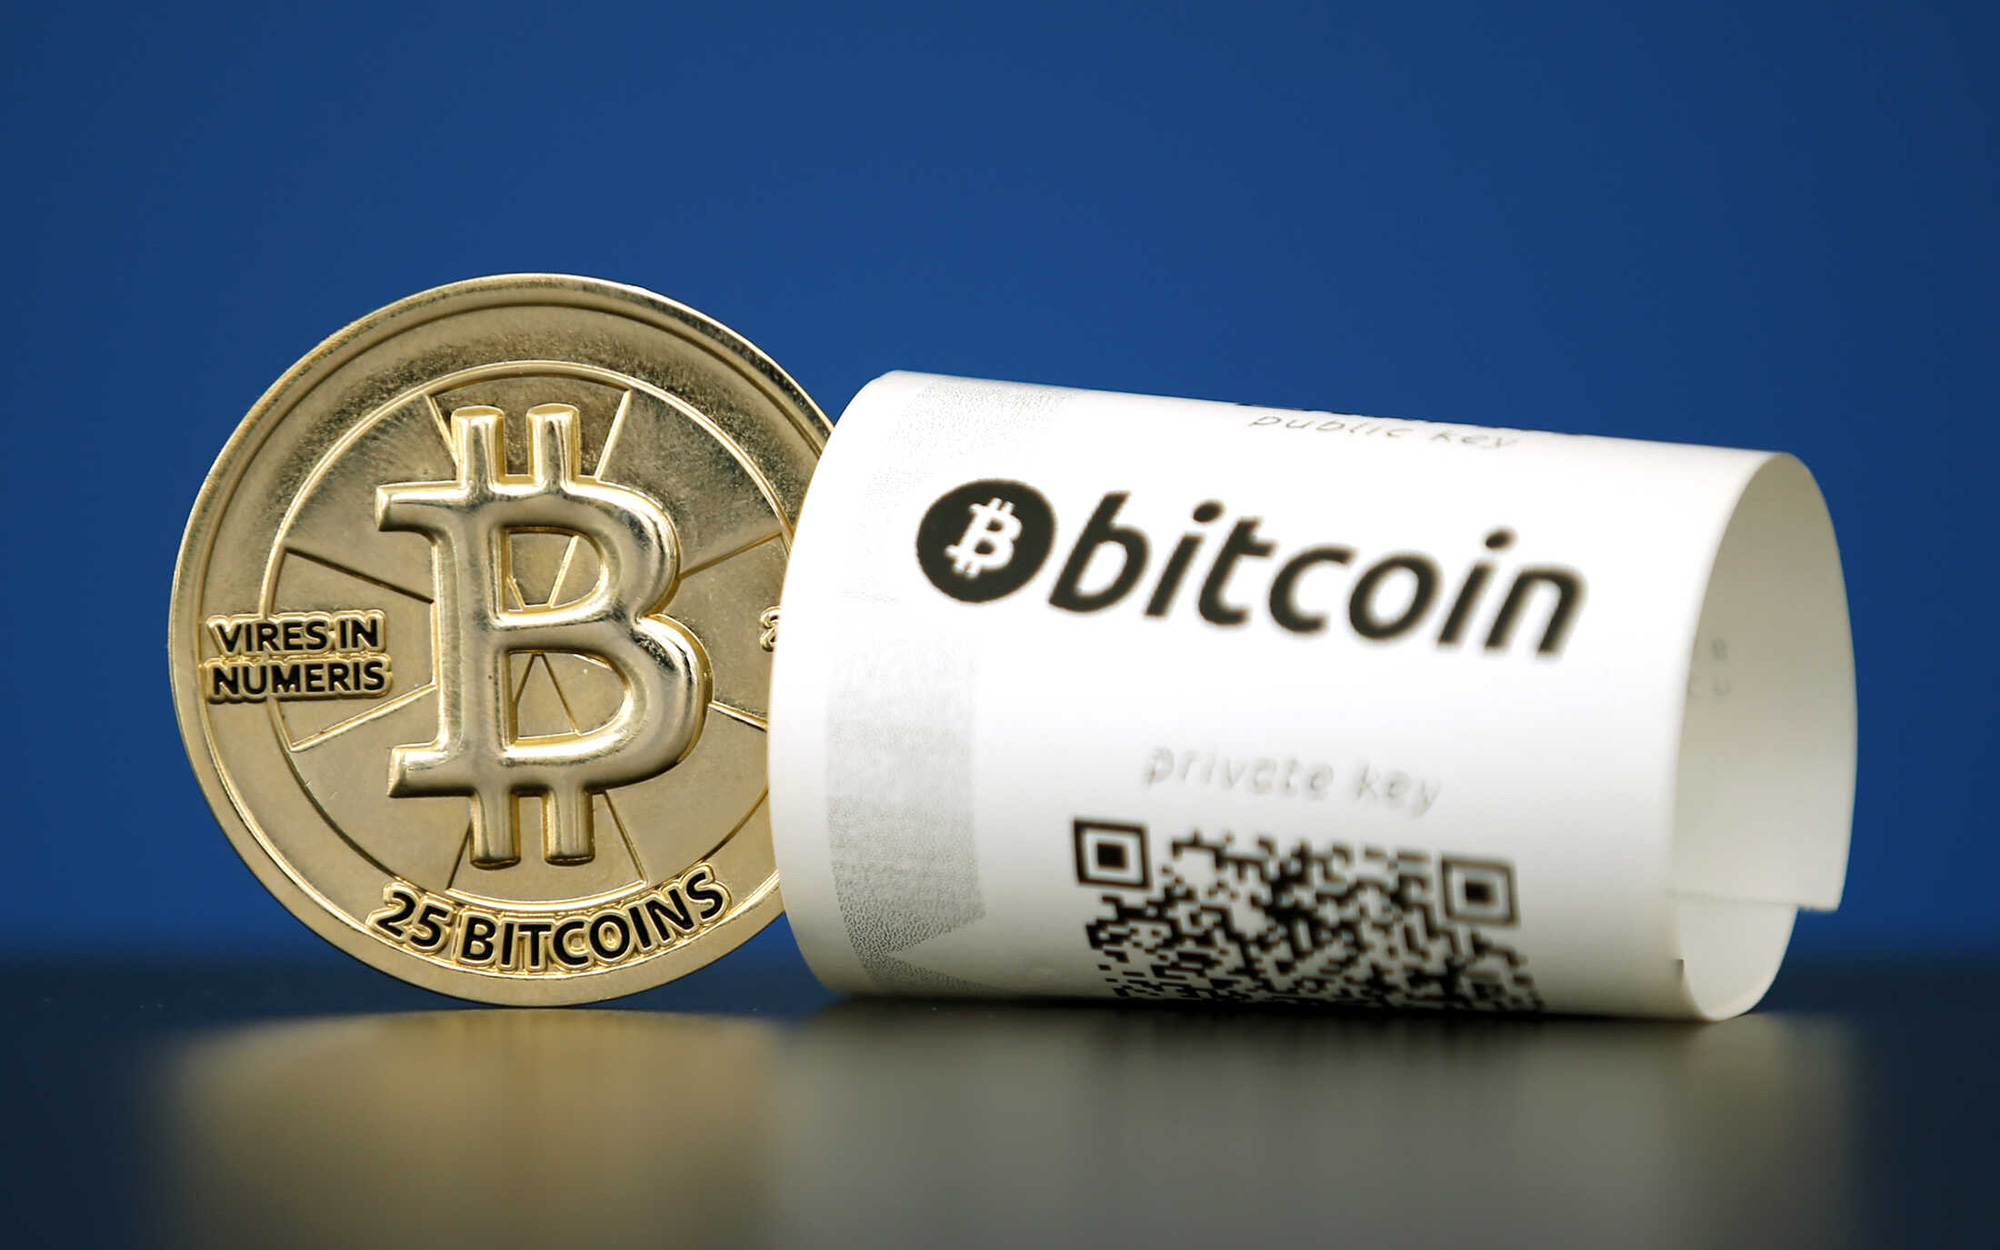 Quốc gia đầu tiên trên thế giới chấp nhận Bitcoin làm phương tiện thanh toán chính thức